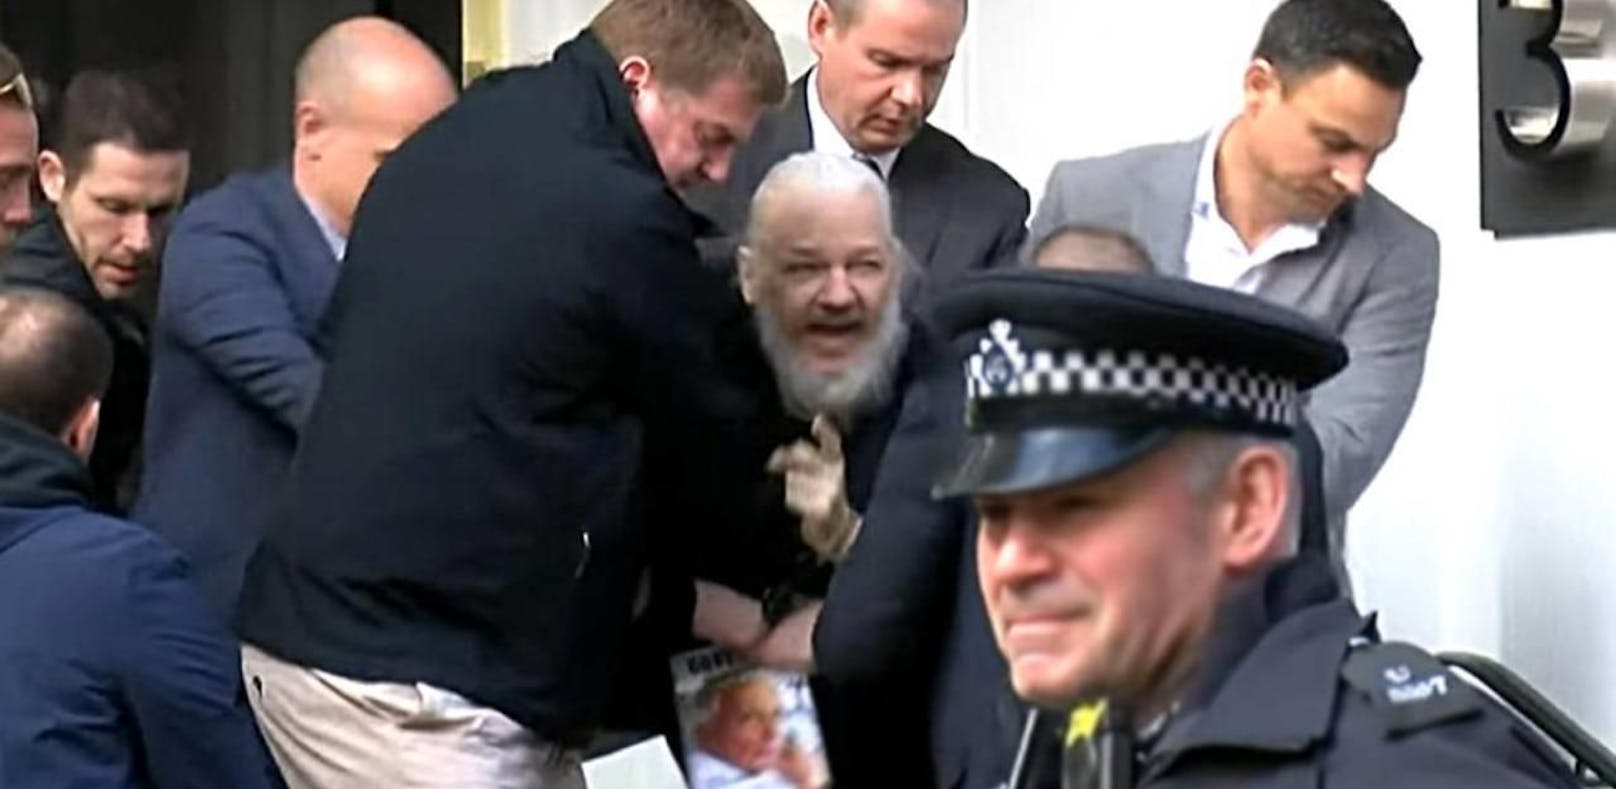 Video zeigt, wie Wikileaks-Gründer verhaftet wird